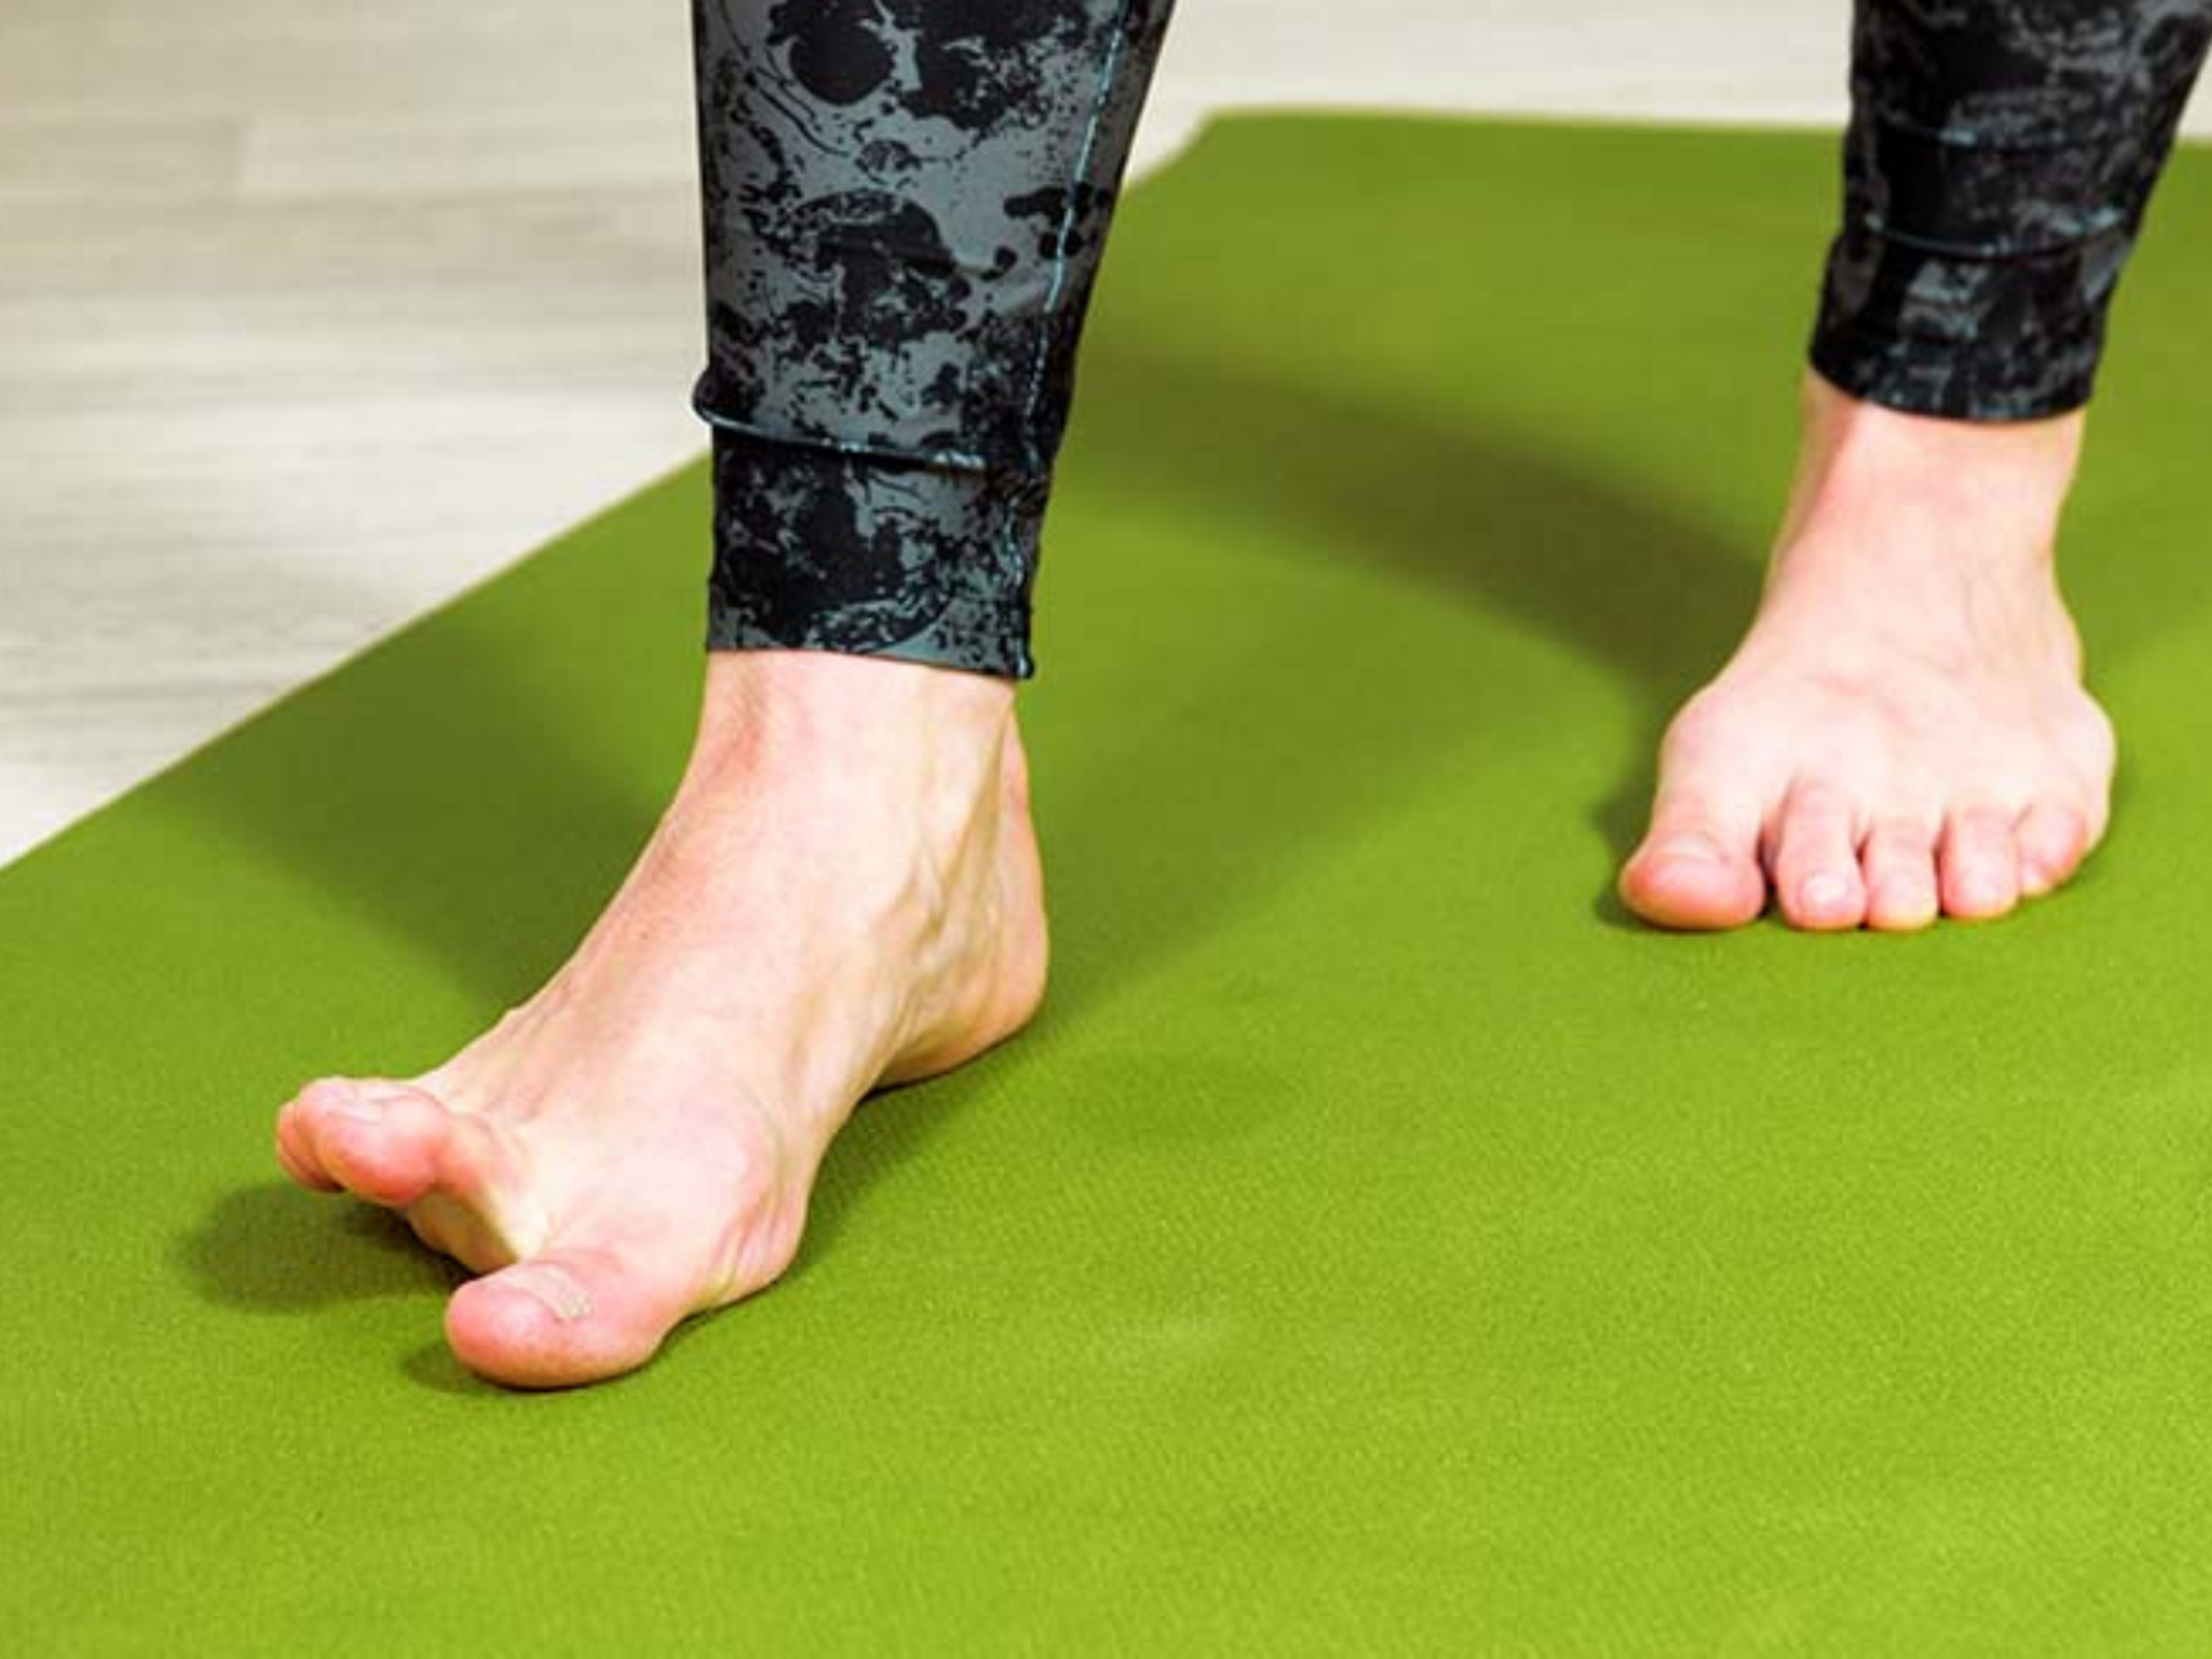 Mit Zehen-Yoga trainierst du die Kontrolle über deinen Fuß. Das hilft bei der Behandlung deiner Plantarfasziitis.